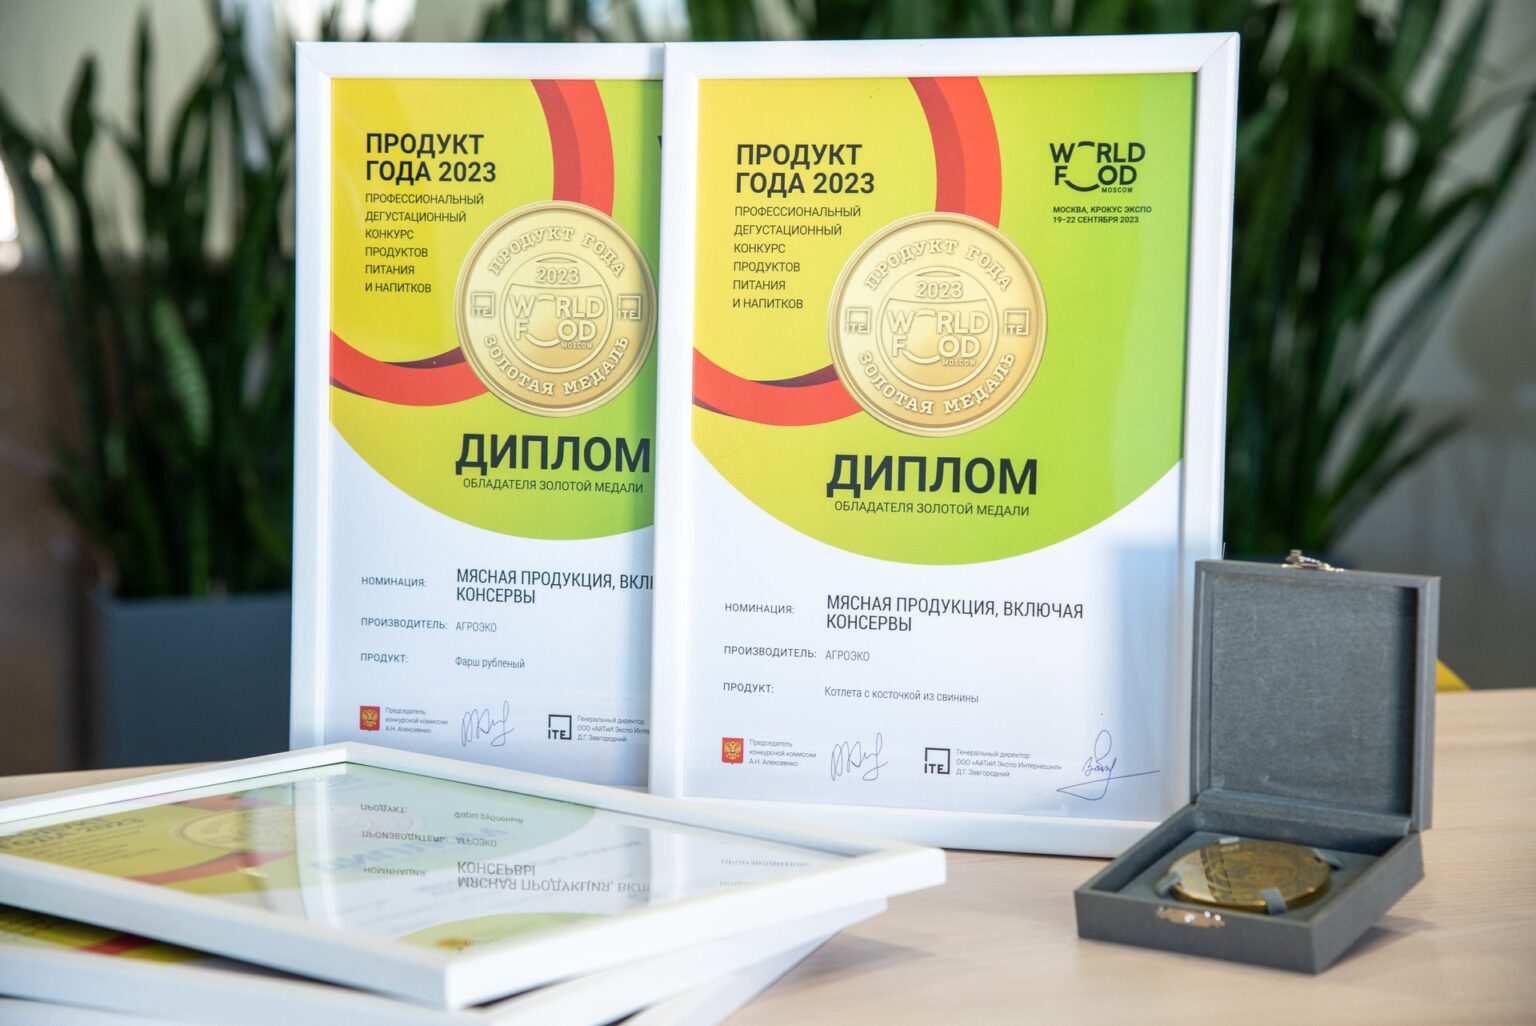 АГРОЭКО: победа дегустационного конкурса «Продукт года 2023»